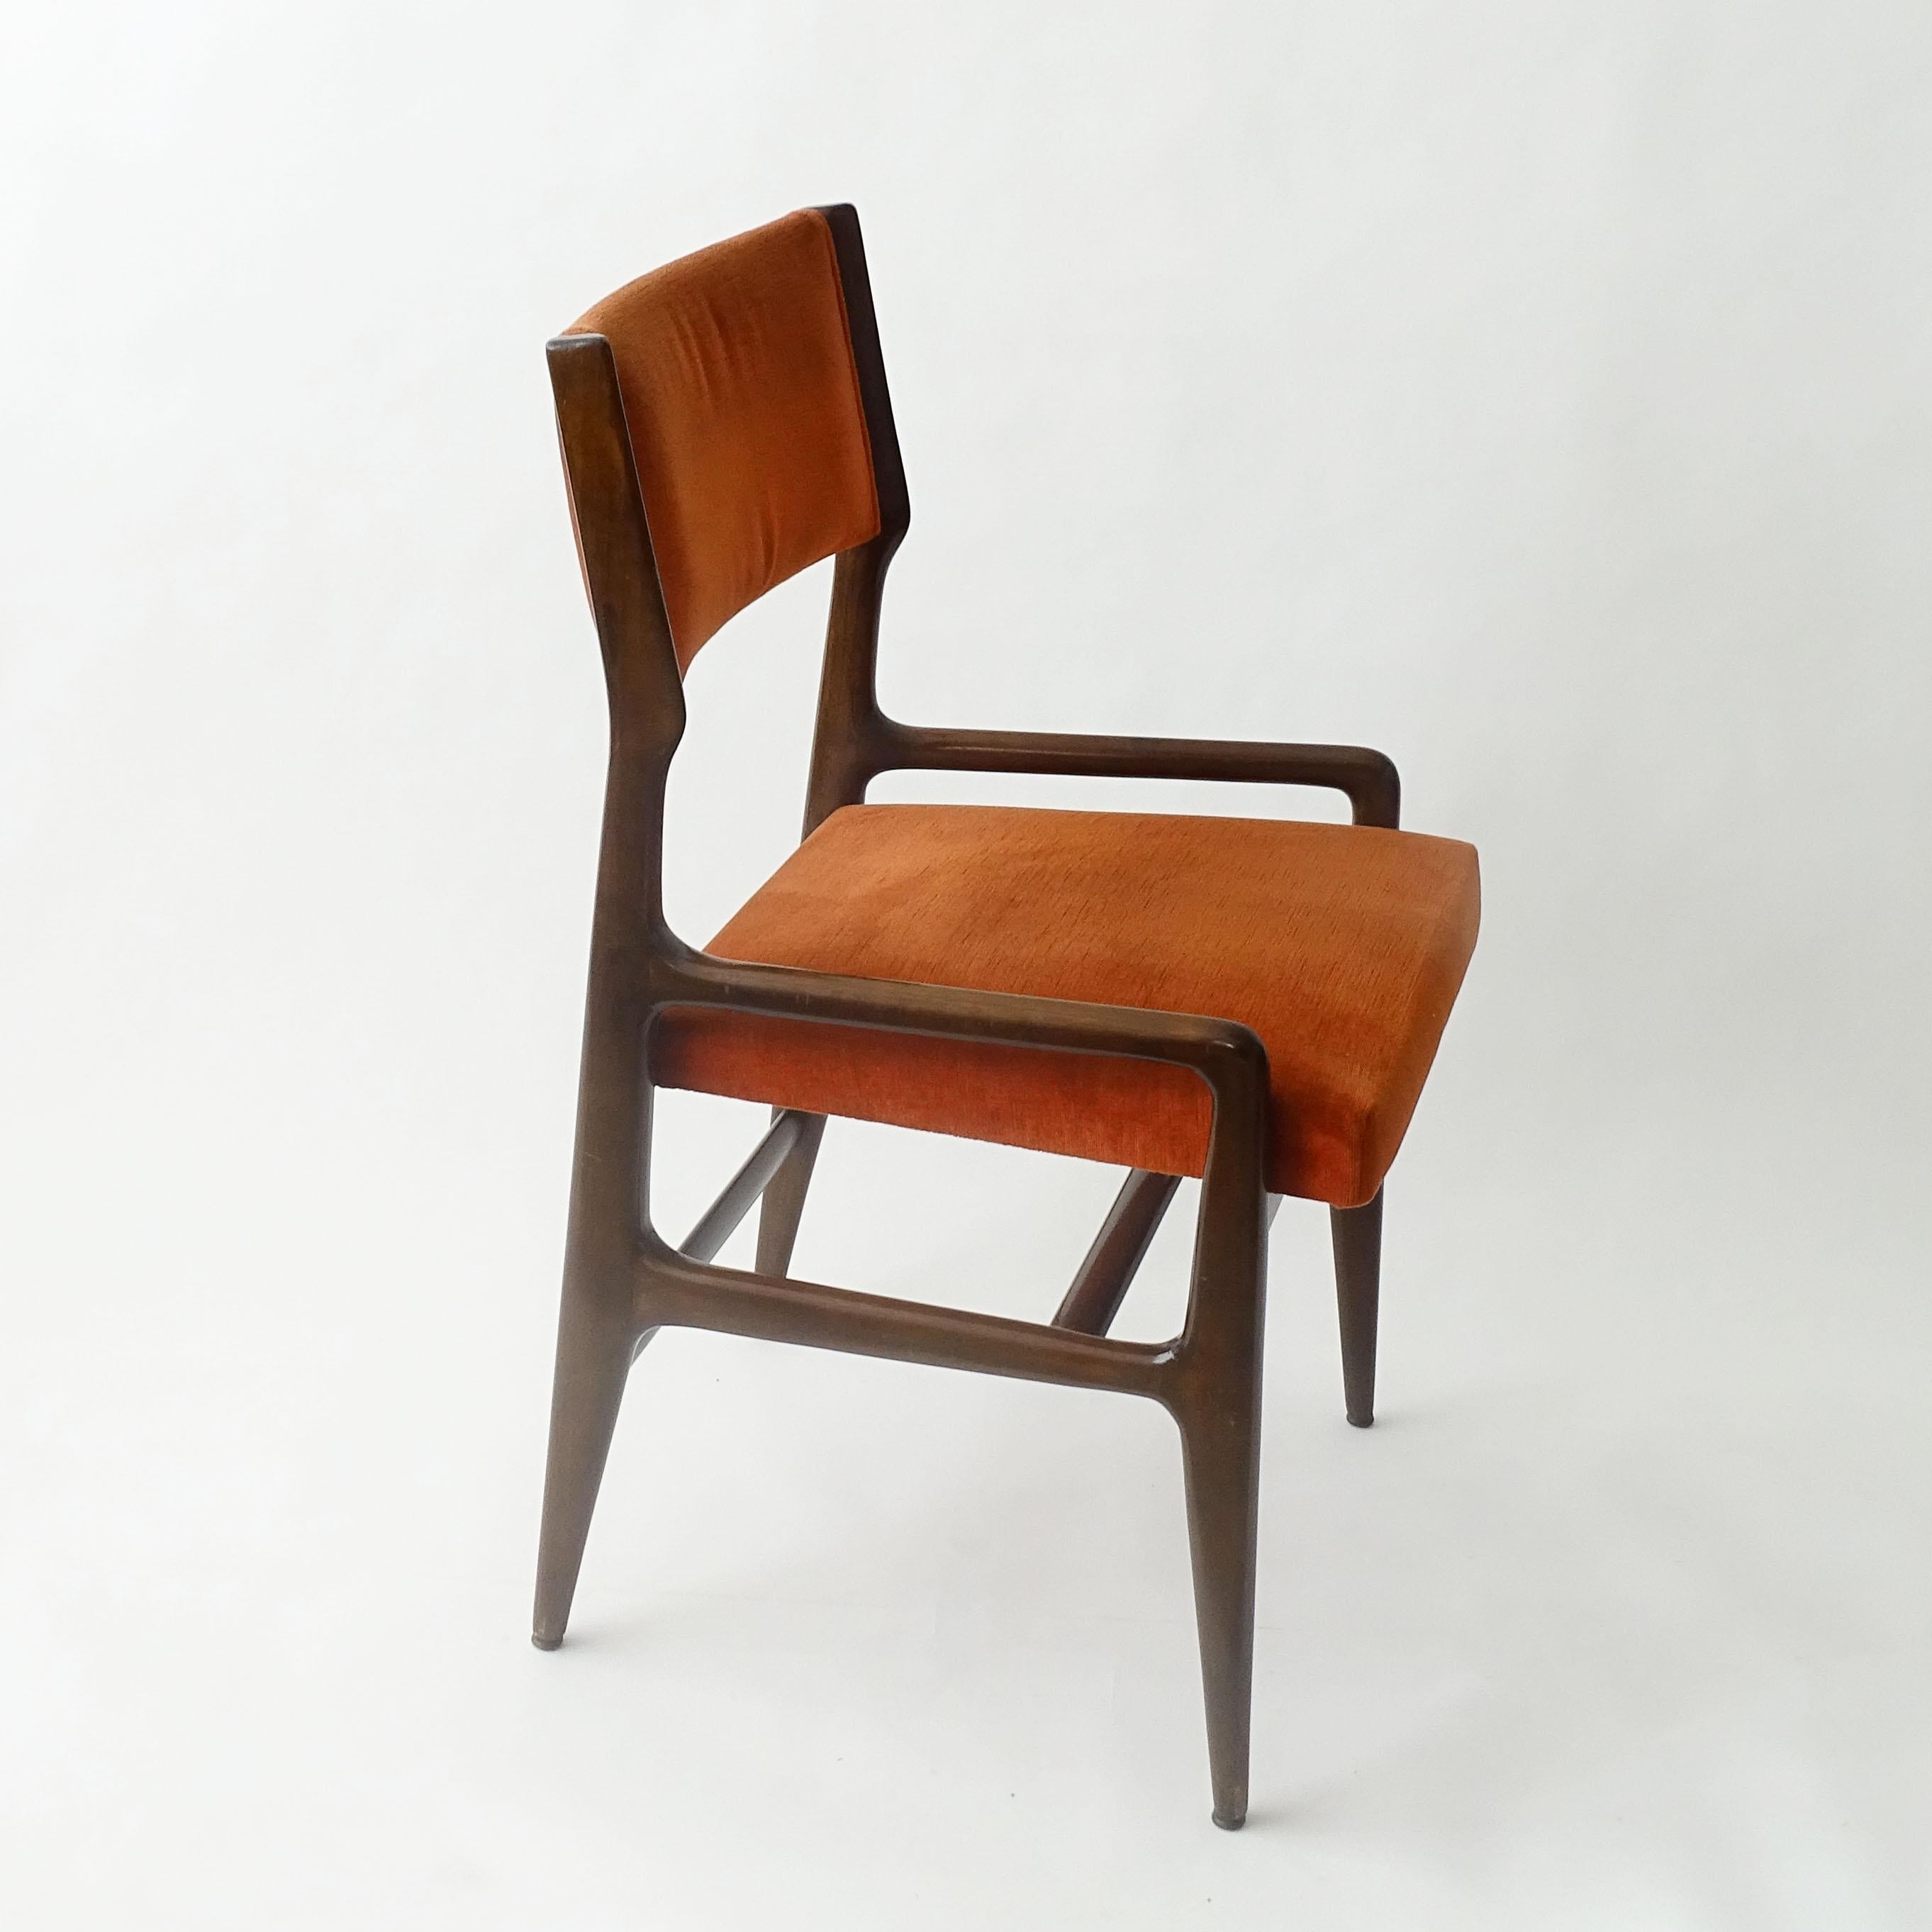 Einzelner Gio Ponti Modell: 676 Stuhl für Cassina, Italien 1950er Jahre
Original Samtpolsterung.